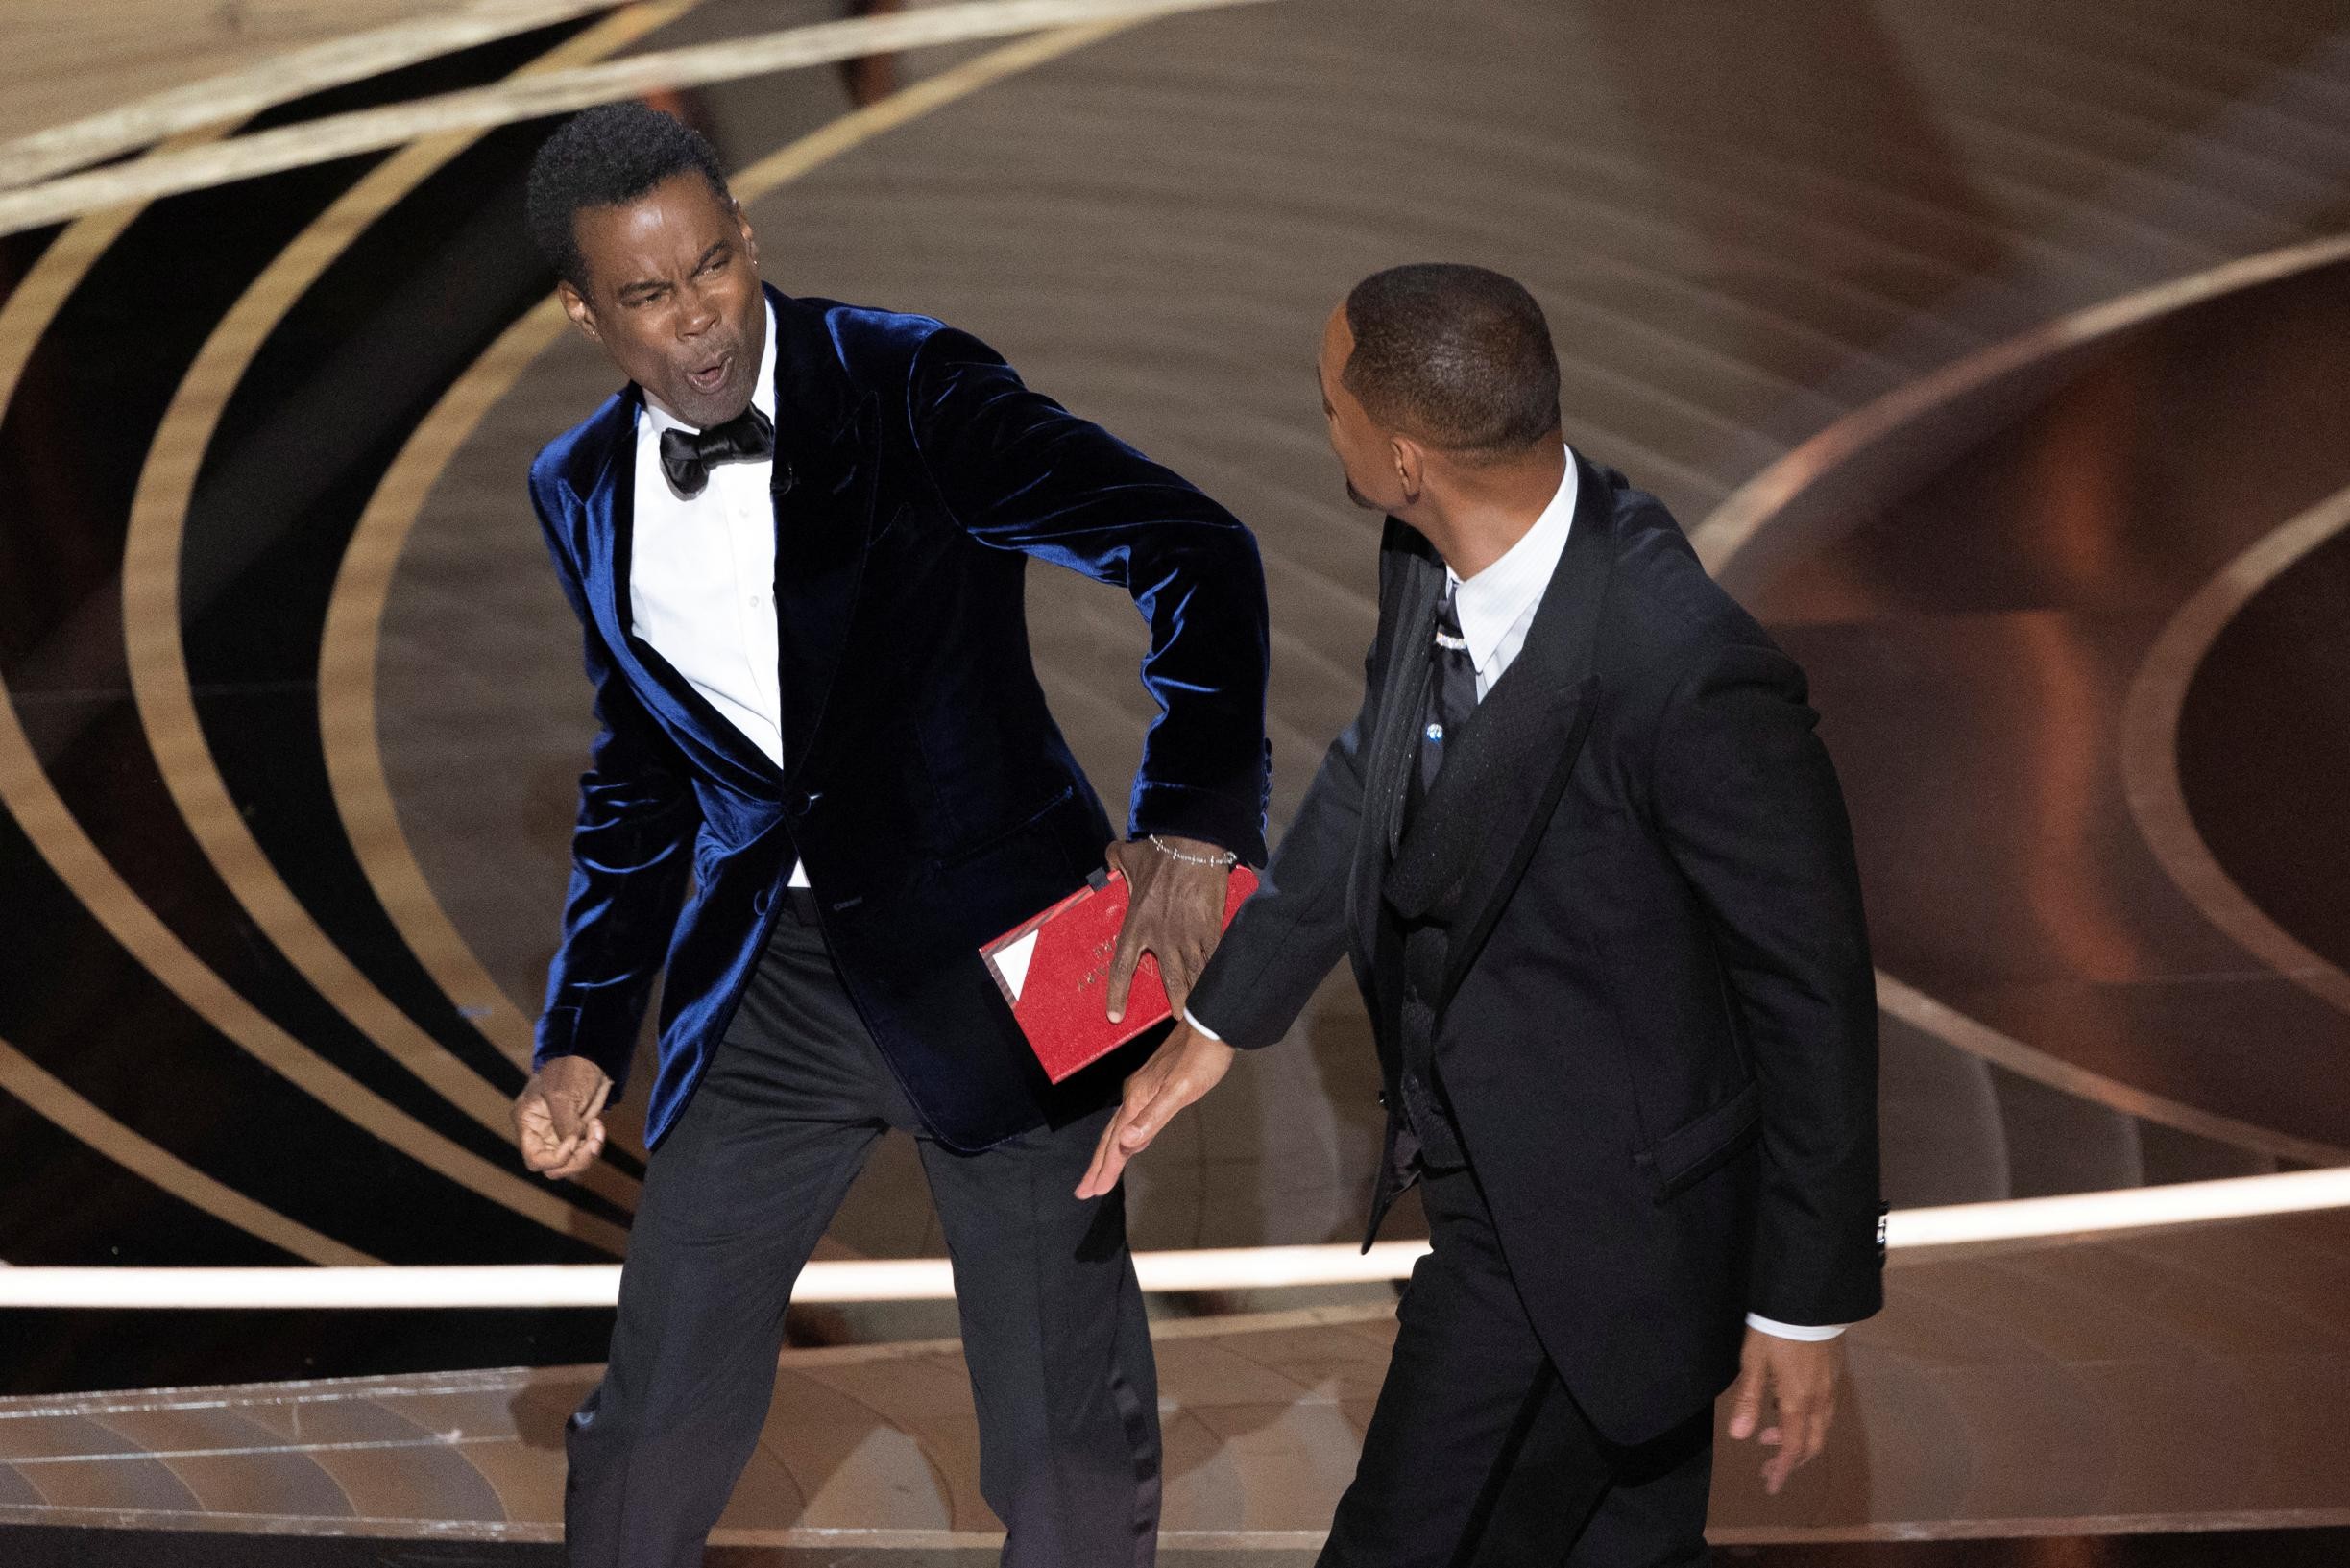 Chris Rock reageert na klap van Will Smith op Oscaruitreiking: “Nog aan het verwerken wat er gebeurd is” - Het Nieuwsblad